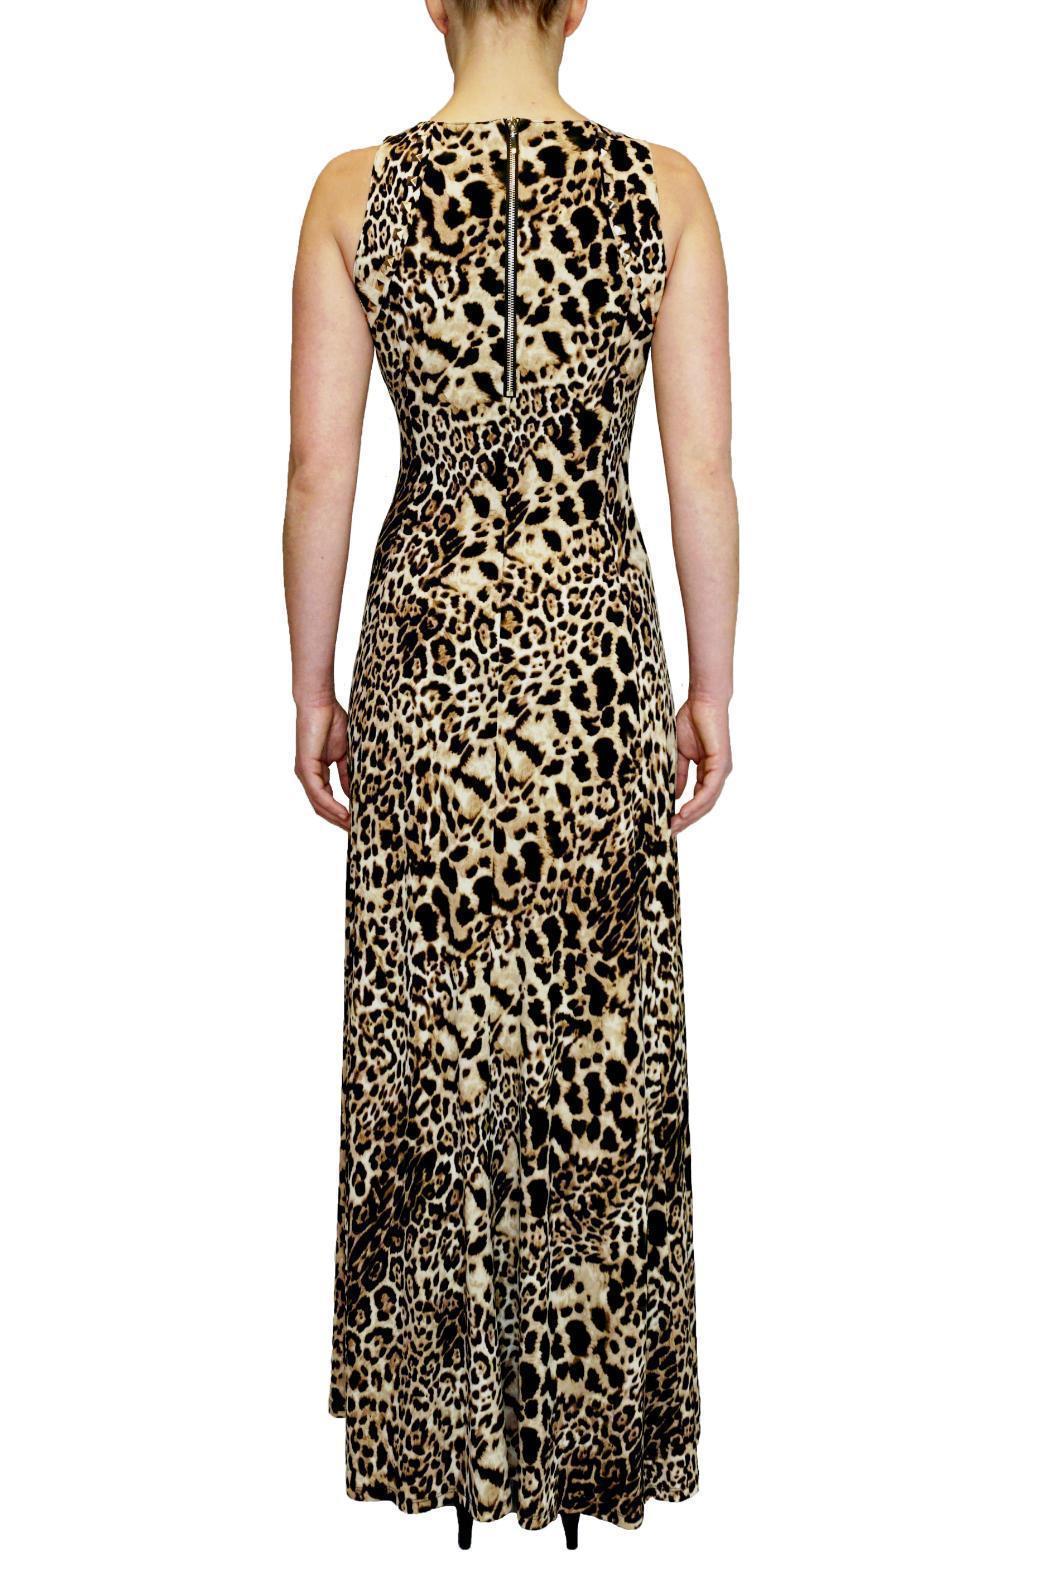 JOSEPH RIBKOFF Leopard print maxi dress